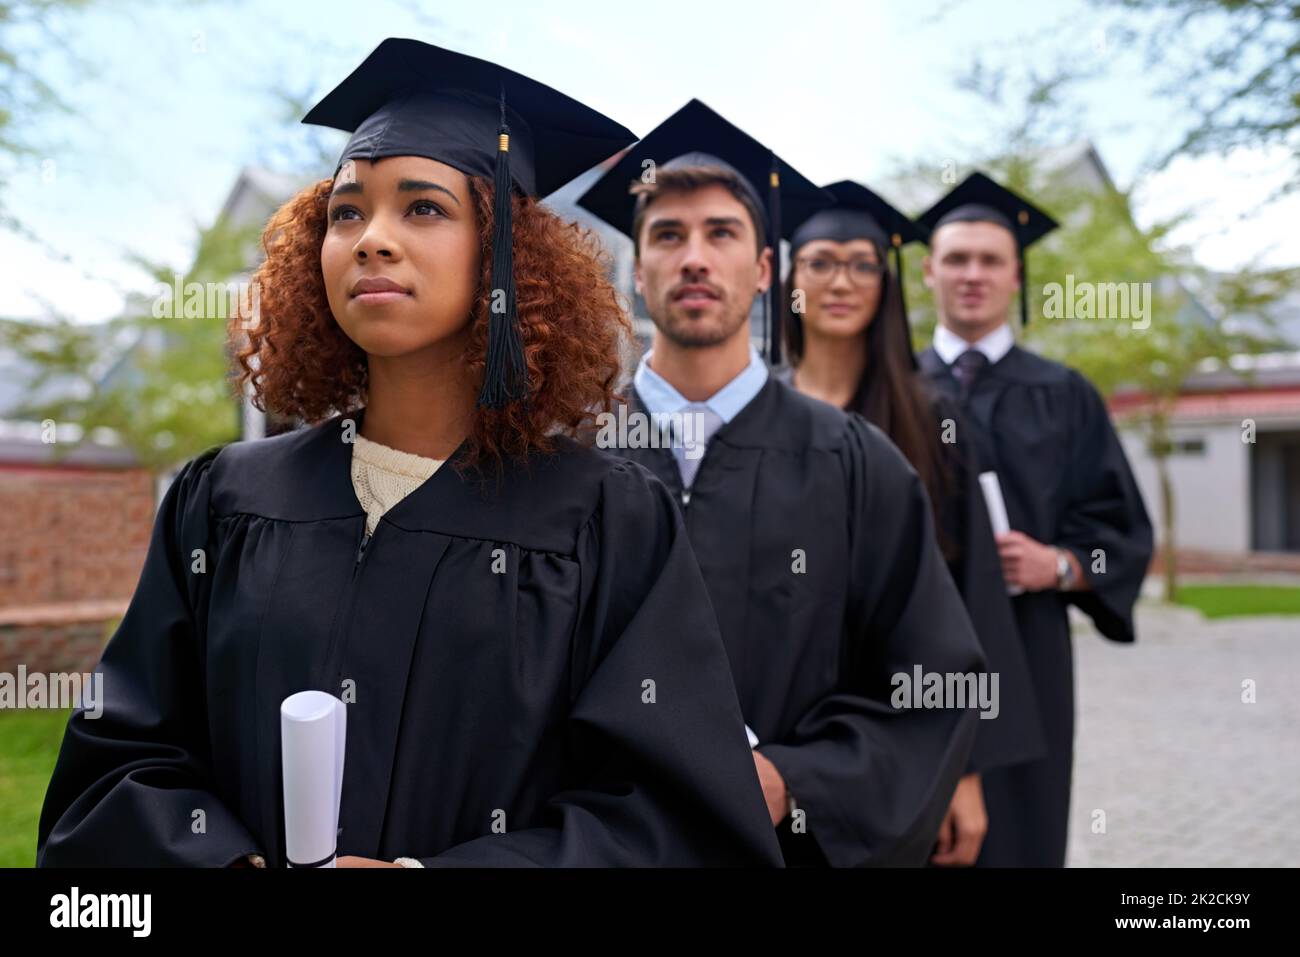 Une éducation supérieure pour de grandes aspirations. Photo d'étudiants diplômés d'une rangée à la recherche. Banque D'Images